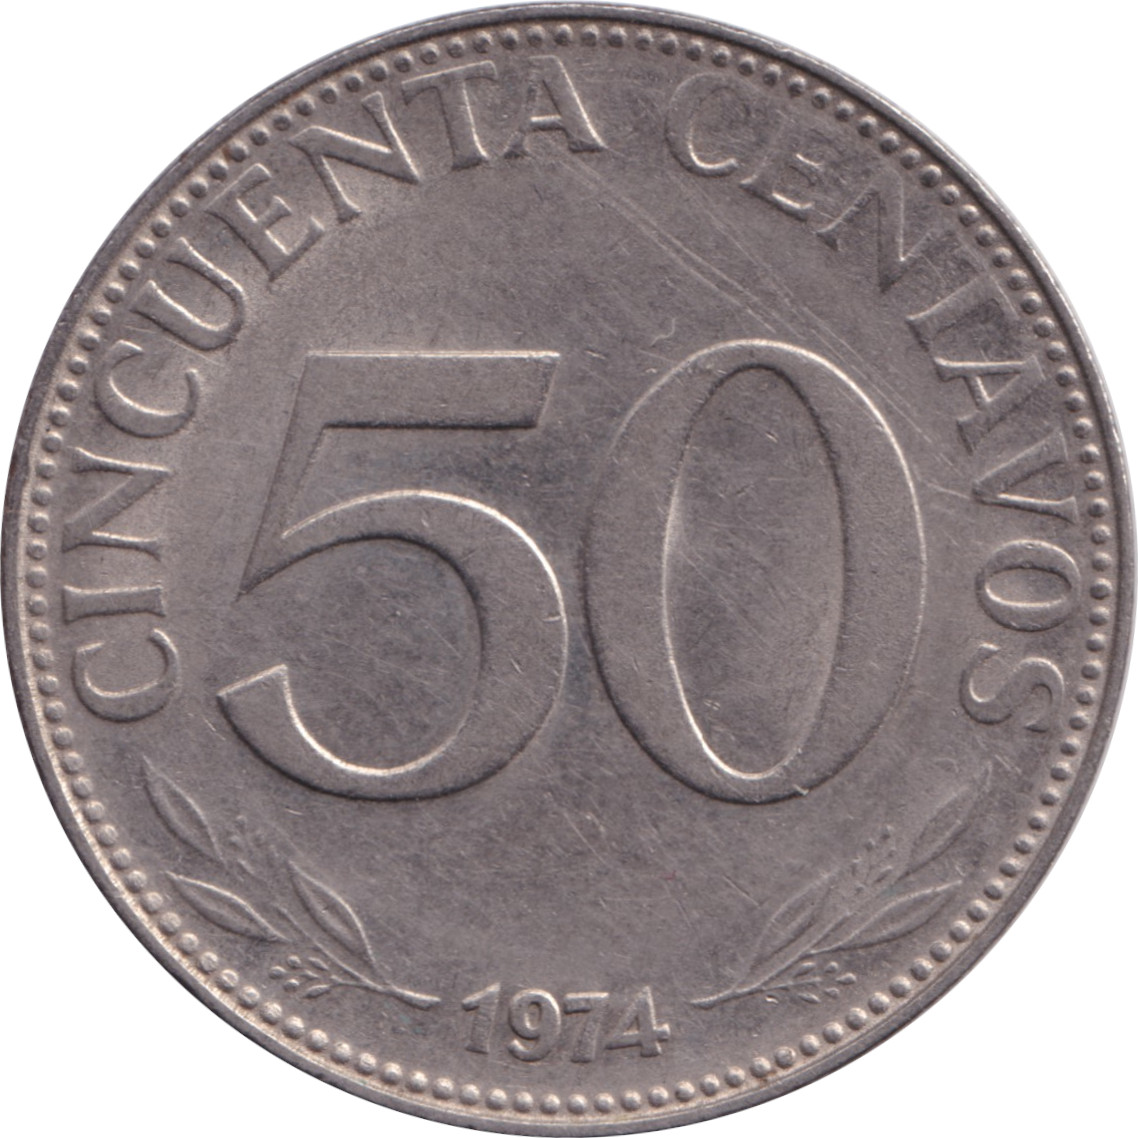 50 centavos - Armoiries